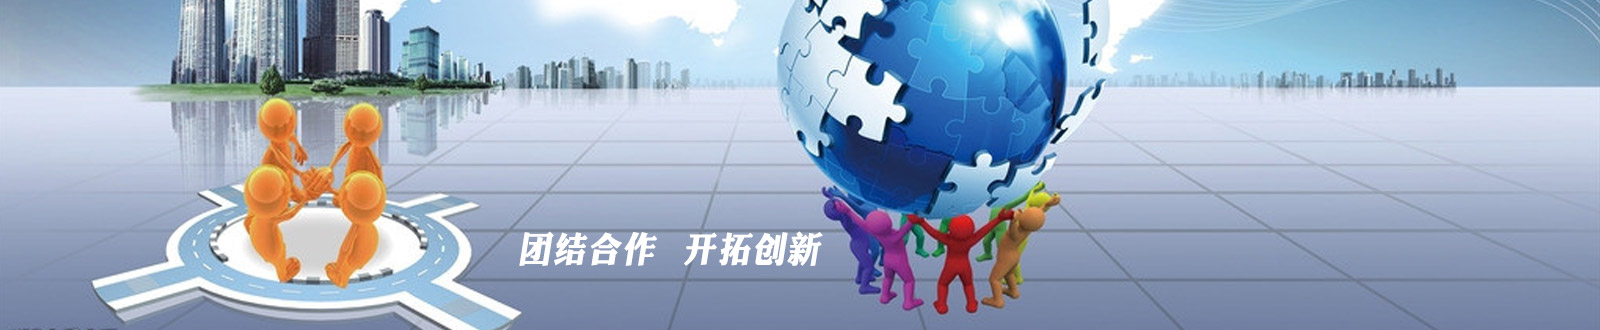 关于当前产品3308维多利亚优惠大·(中国)官方网站的成功案例等相关图片